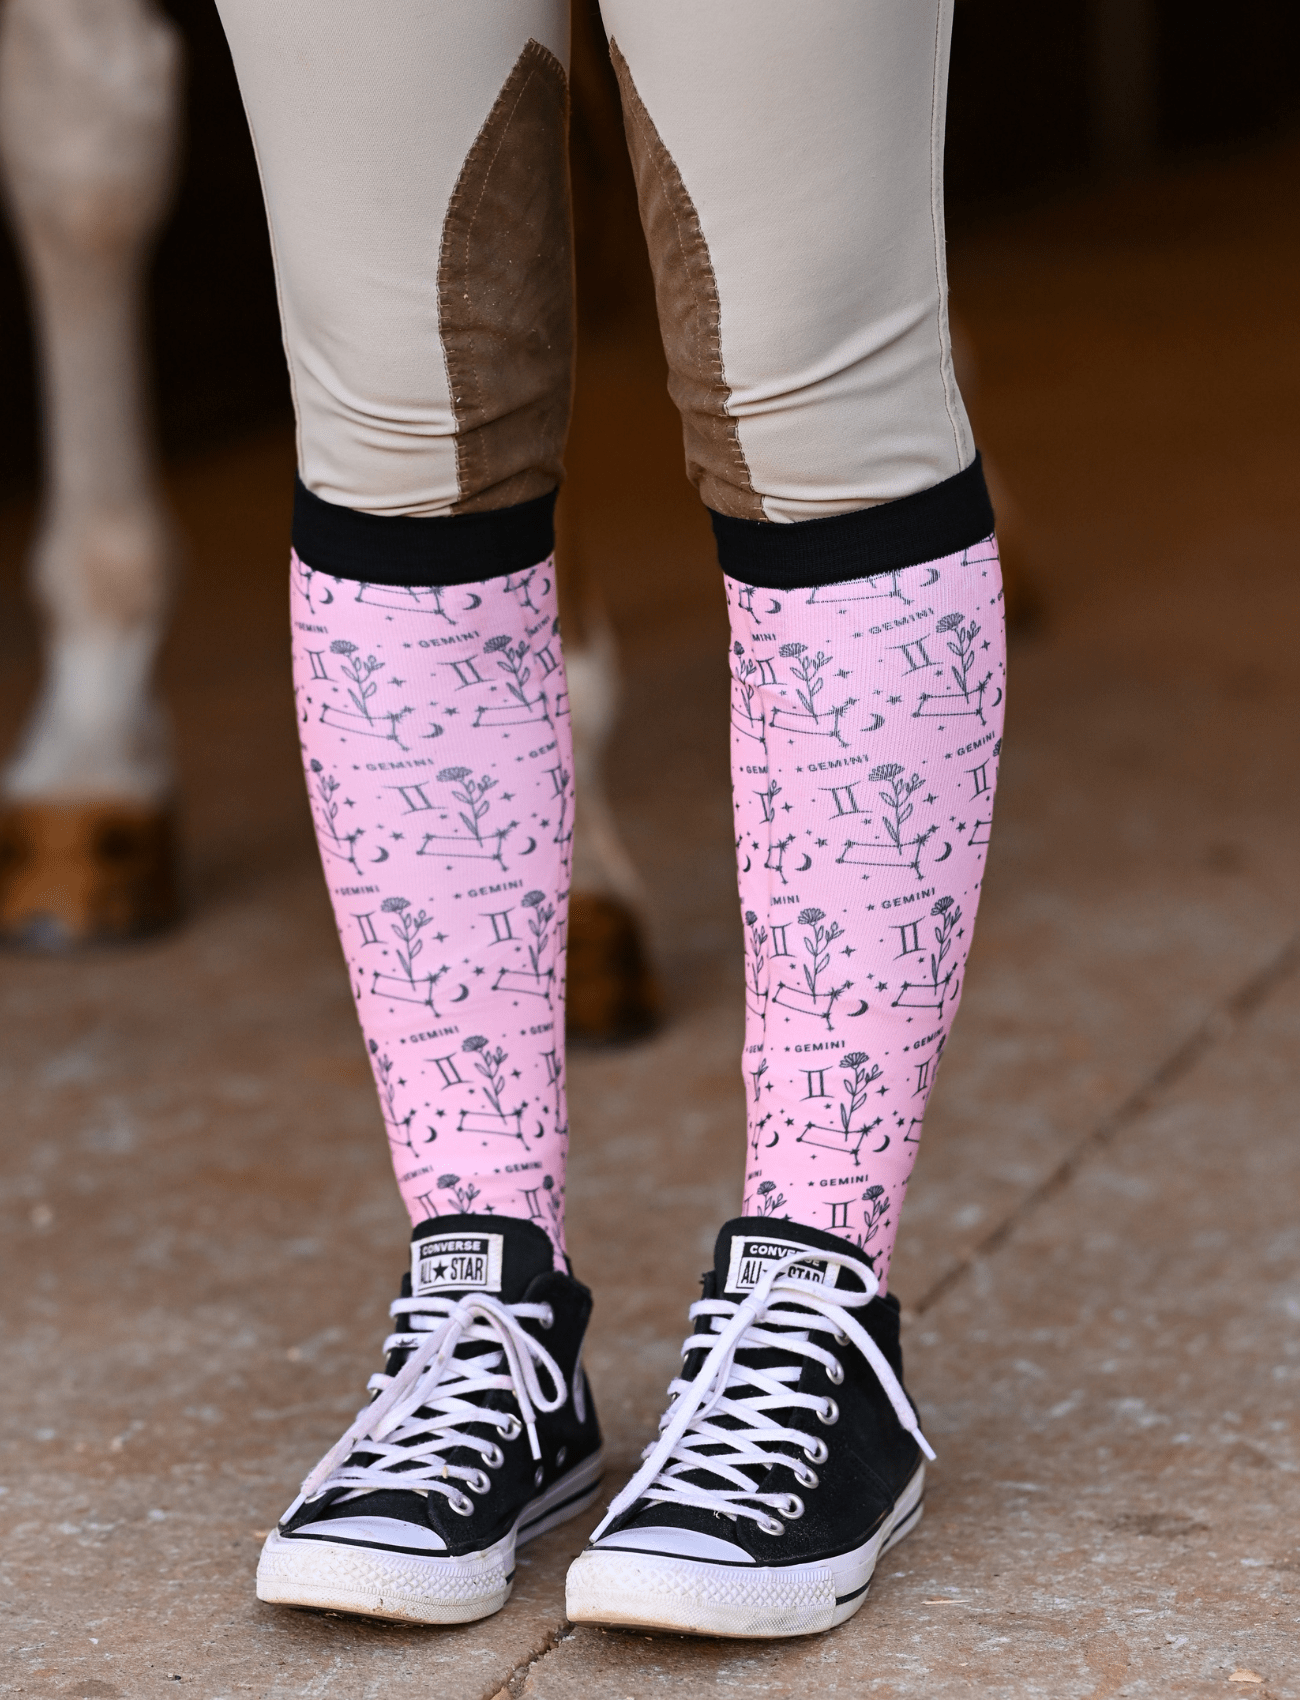 D&S LIMITED EDITION Limited Edition Limited Floral Gemini Socks equestrian boot socks boot socks thin socks riding socks pattern socks tall socks funny socks knee high socks horse socks horse show socks